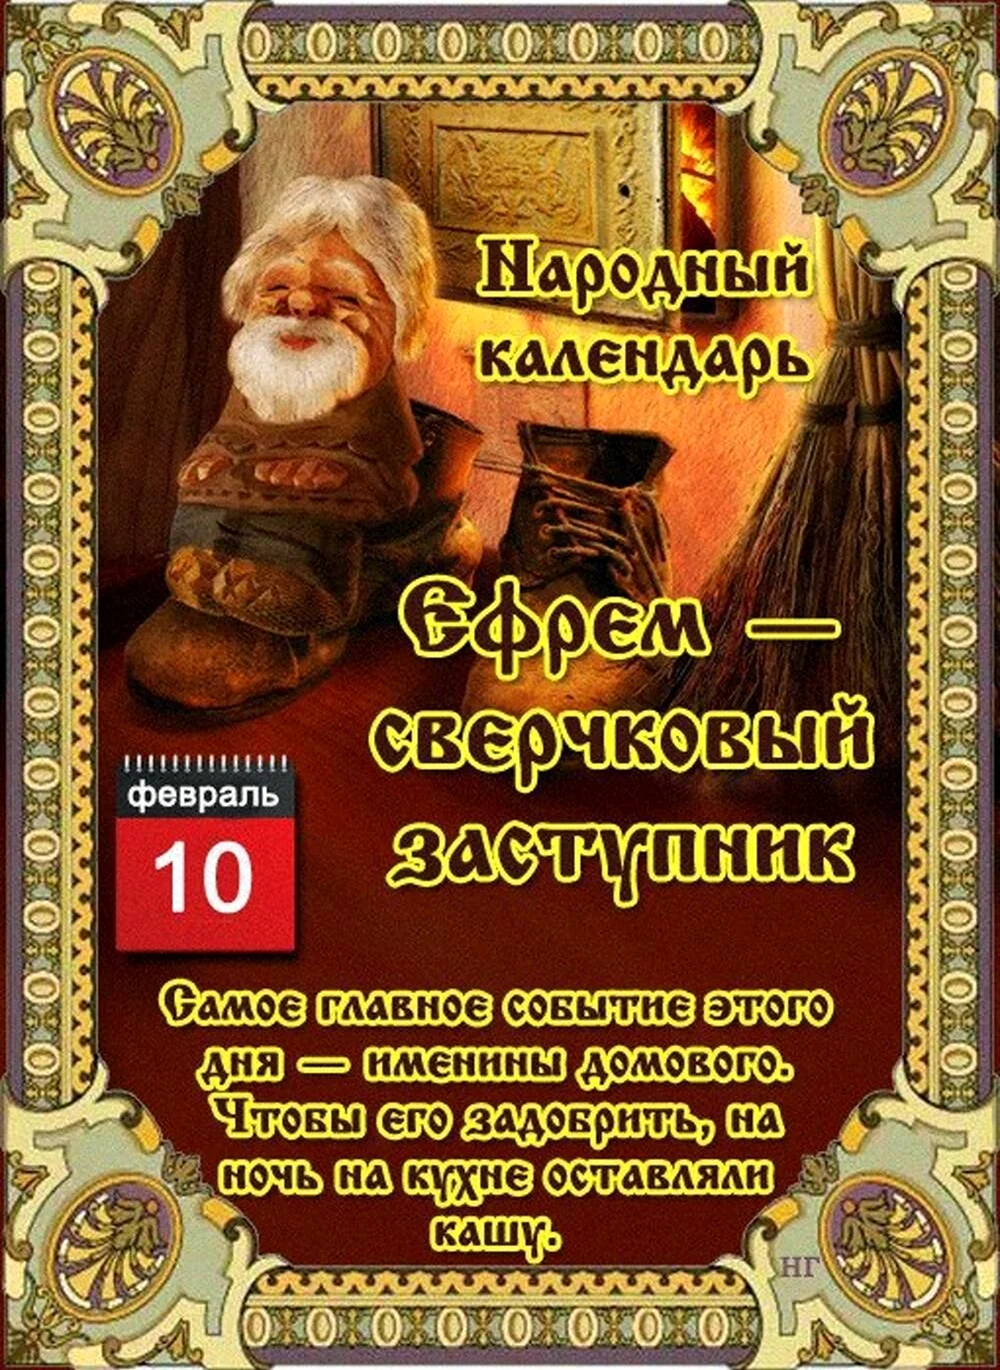 Народный календарь Ефрем – сверчковый заступник. Поздравление